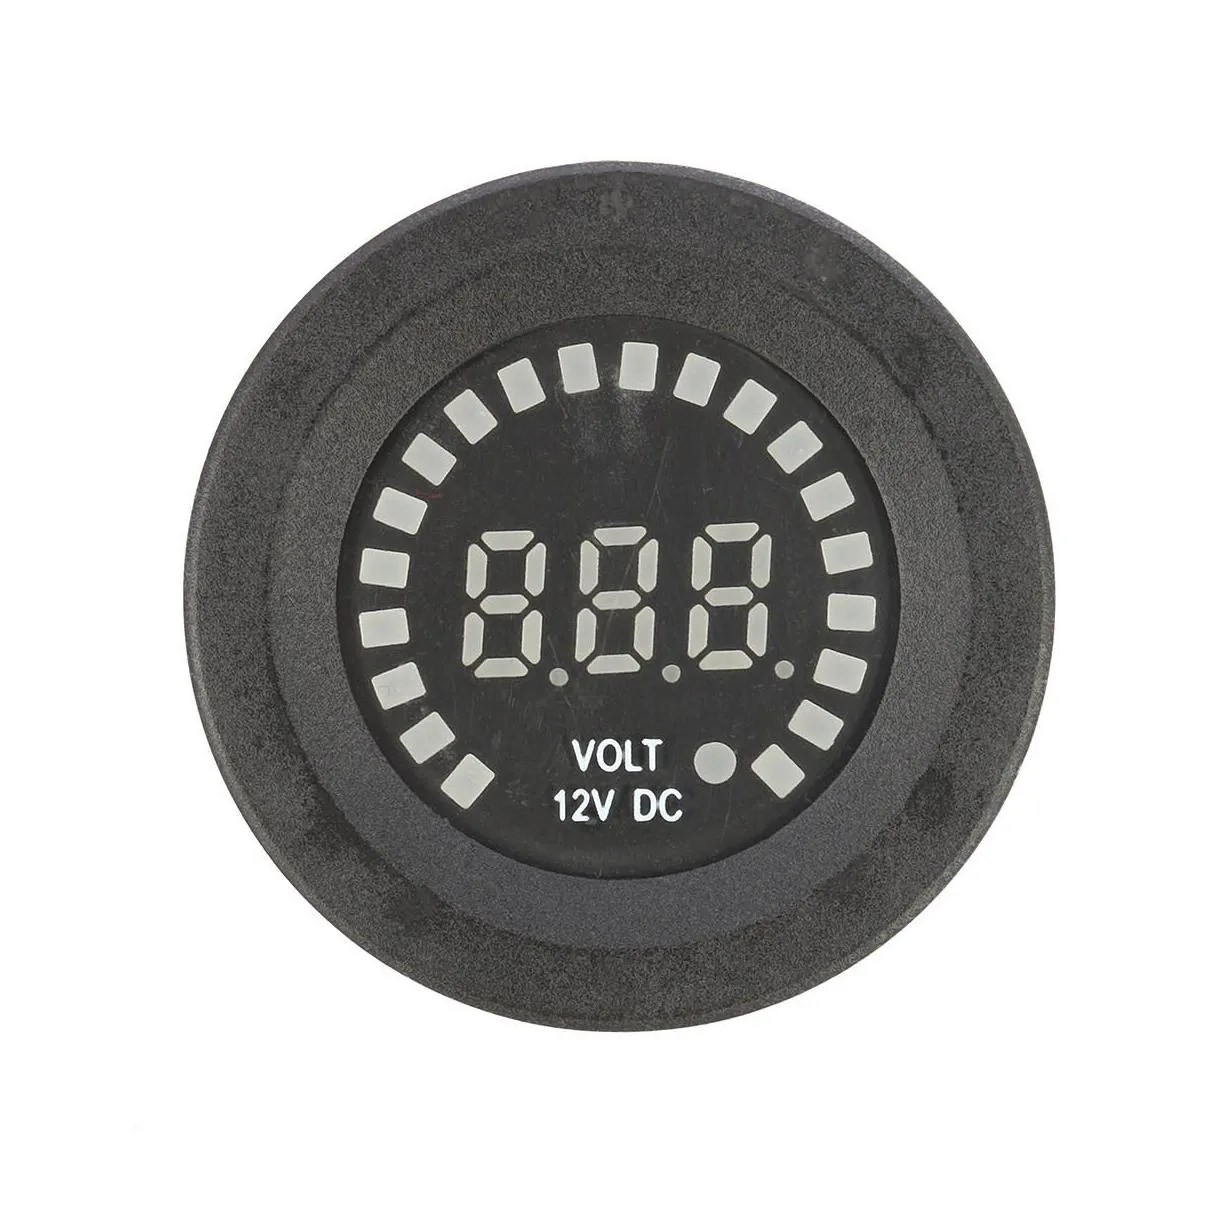 12v led digital voltage socket meter display auto car motorcycle panel volt meterr